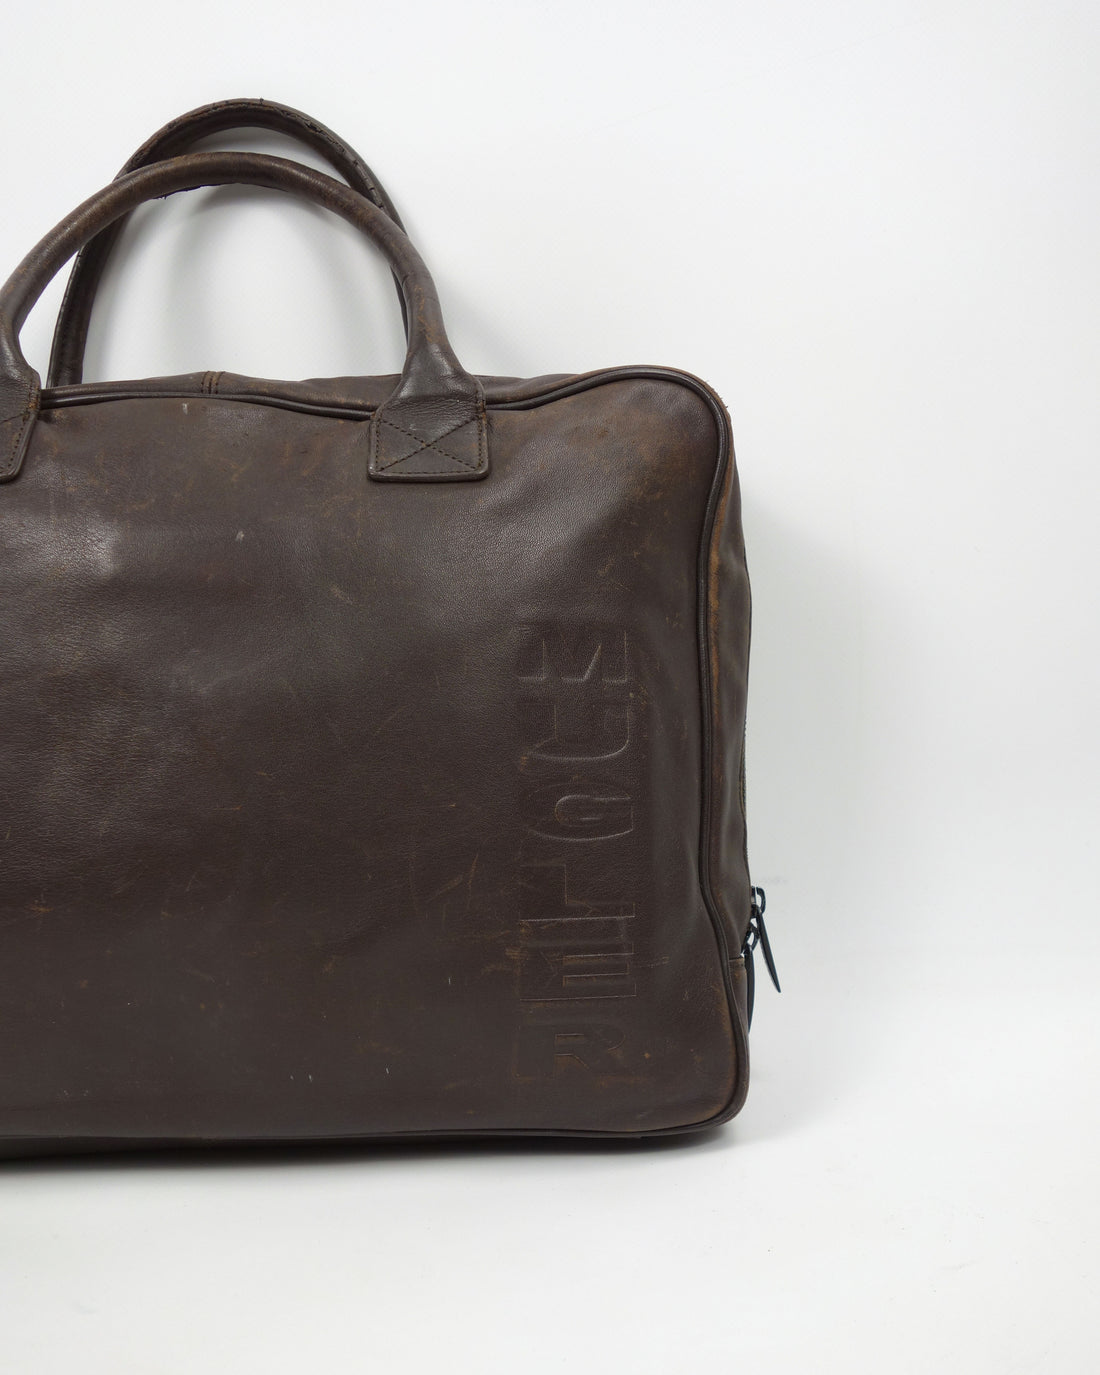 Mugler Brown Leather Hand Bag 2000's